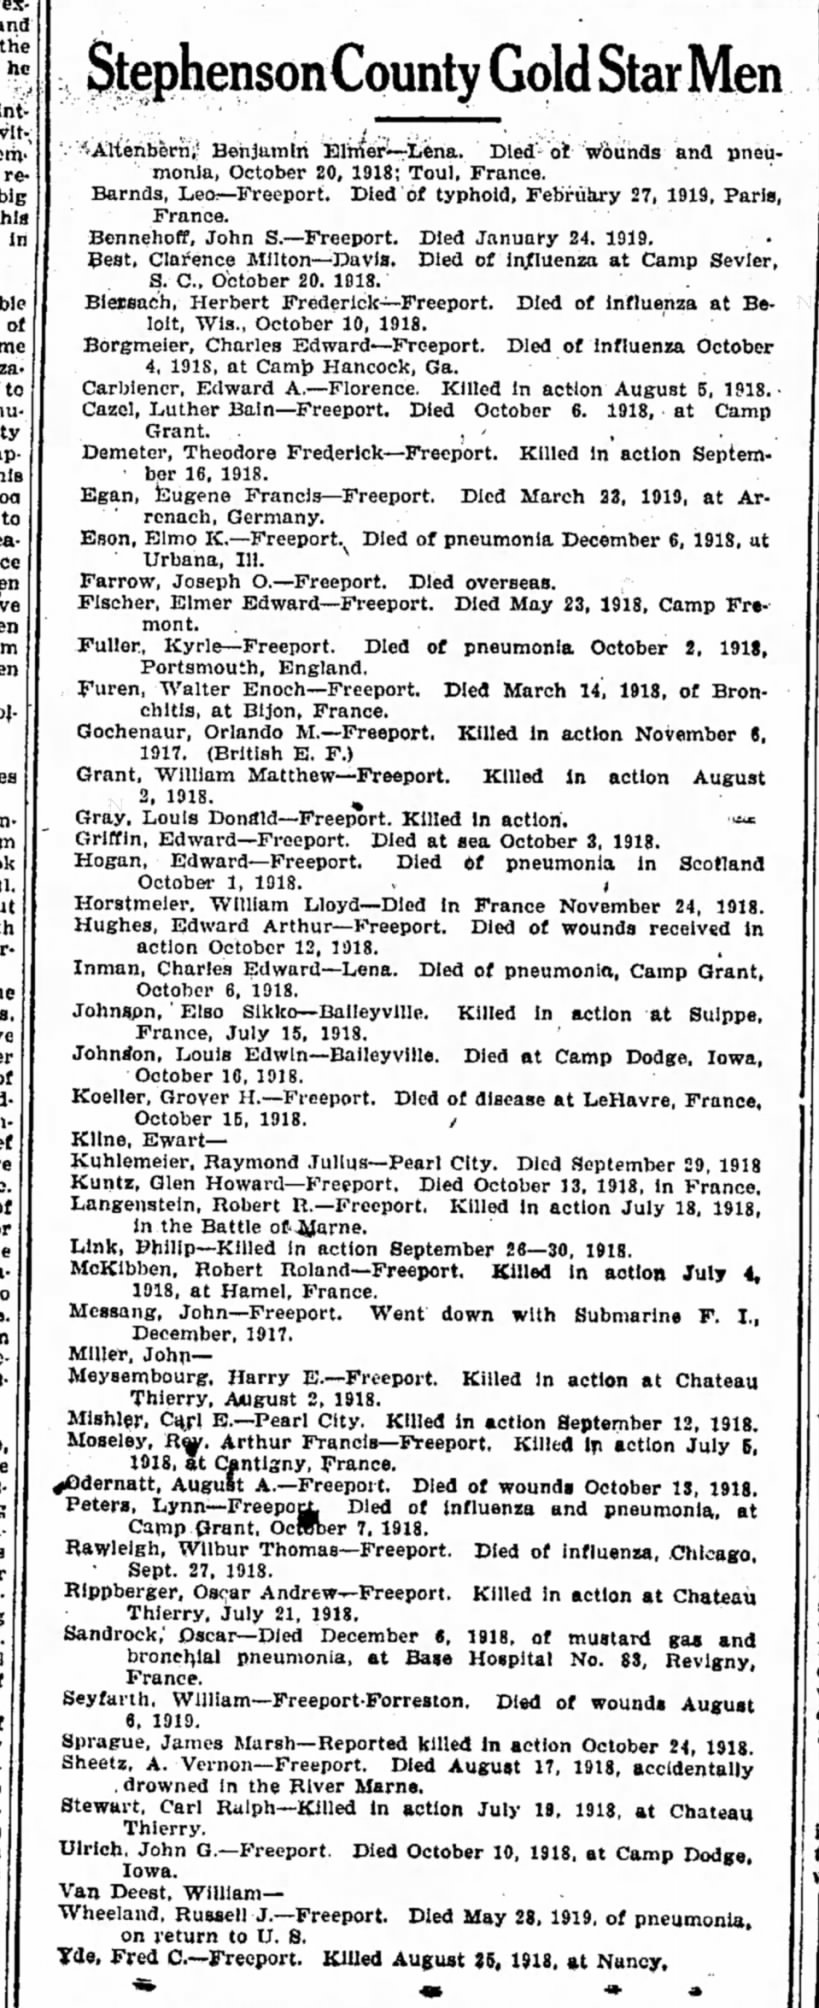 Stephenson County Gold Star Men
11 November 1921  Freeport Journal Standard, Freeport, Illinois